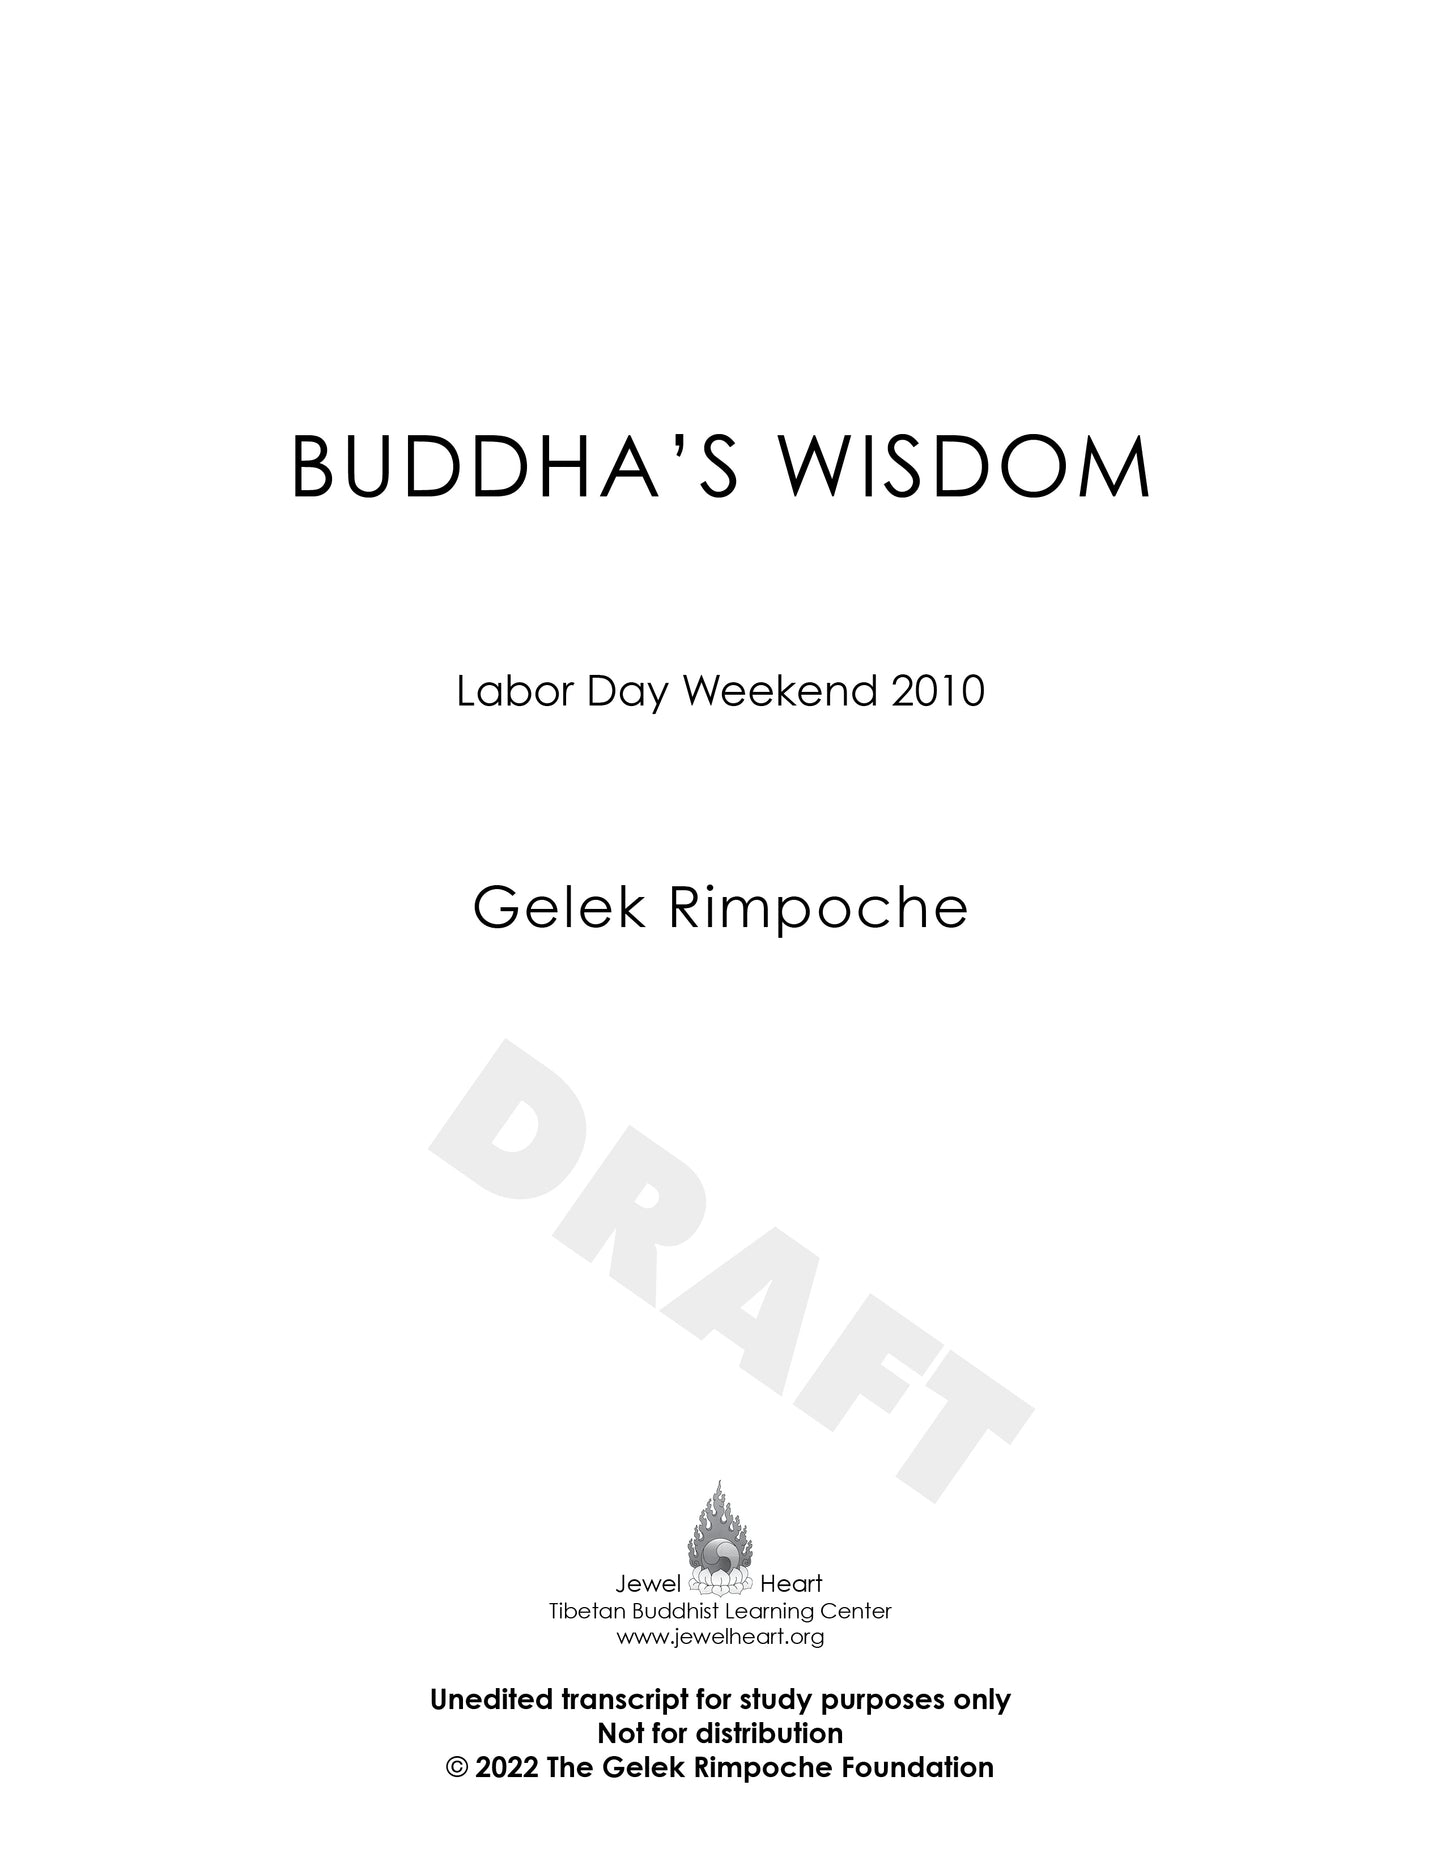 Buddha's Wisdom - Labor Day Weekend 2010